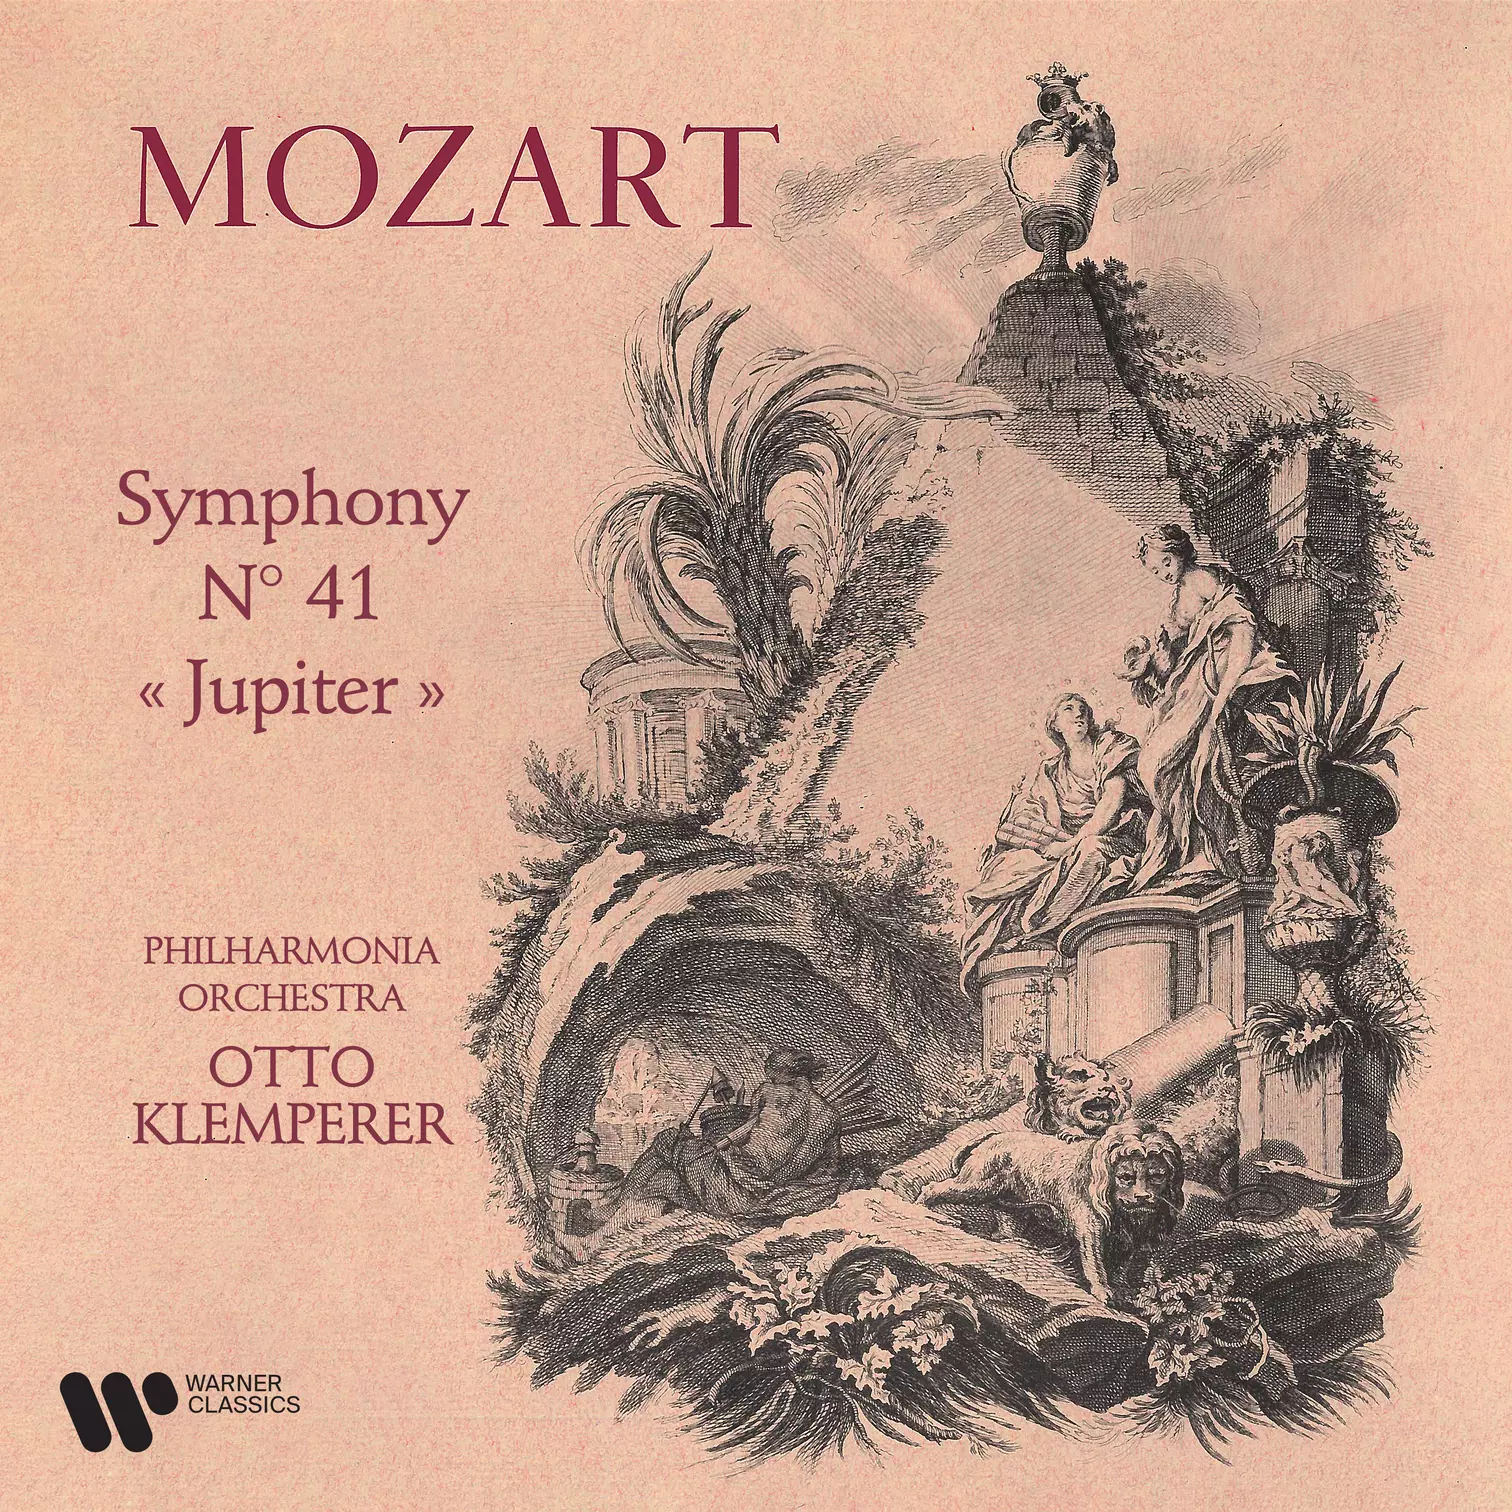 Mozart: Symphony No. 41 “Jupiter”